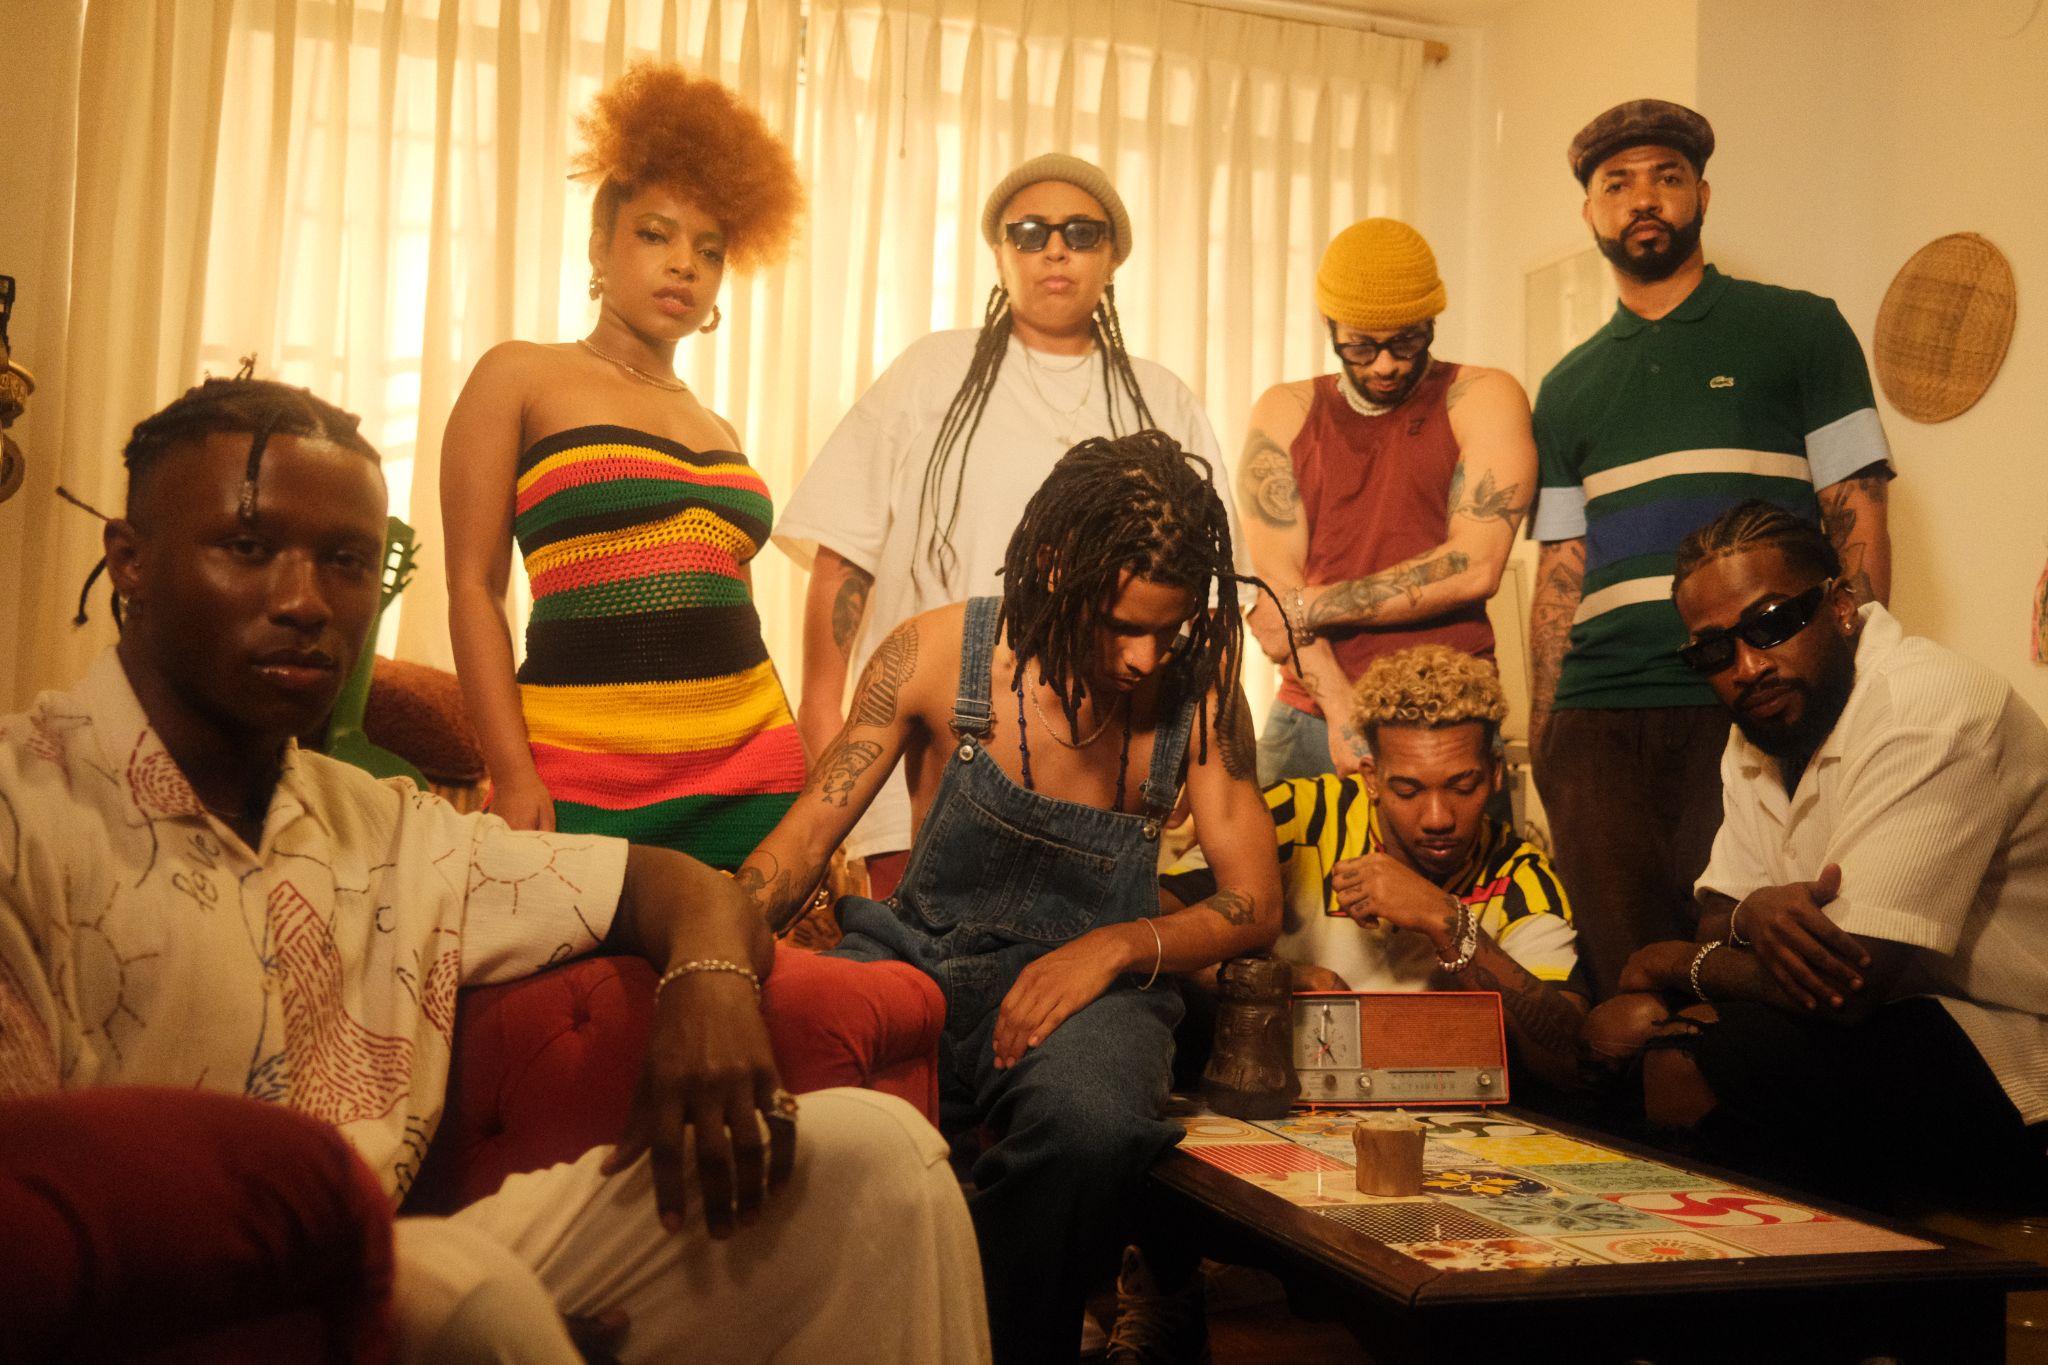 Izrra lança single inédito com King e Afrocidade